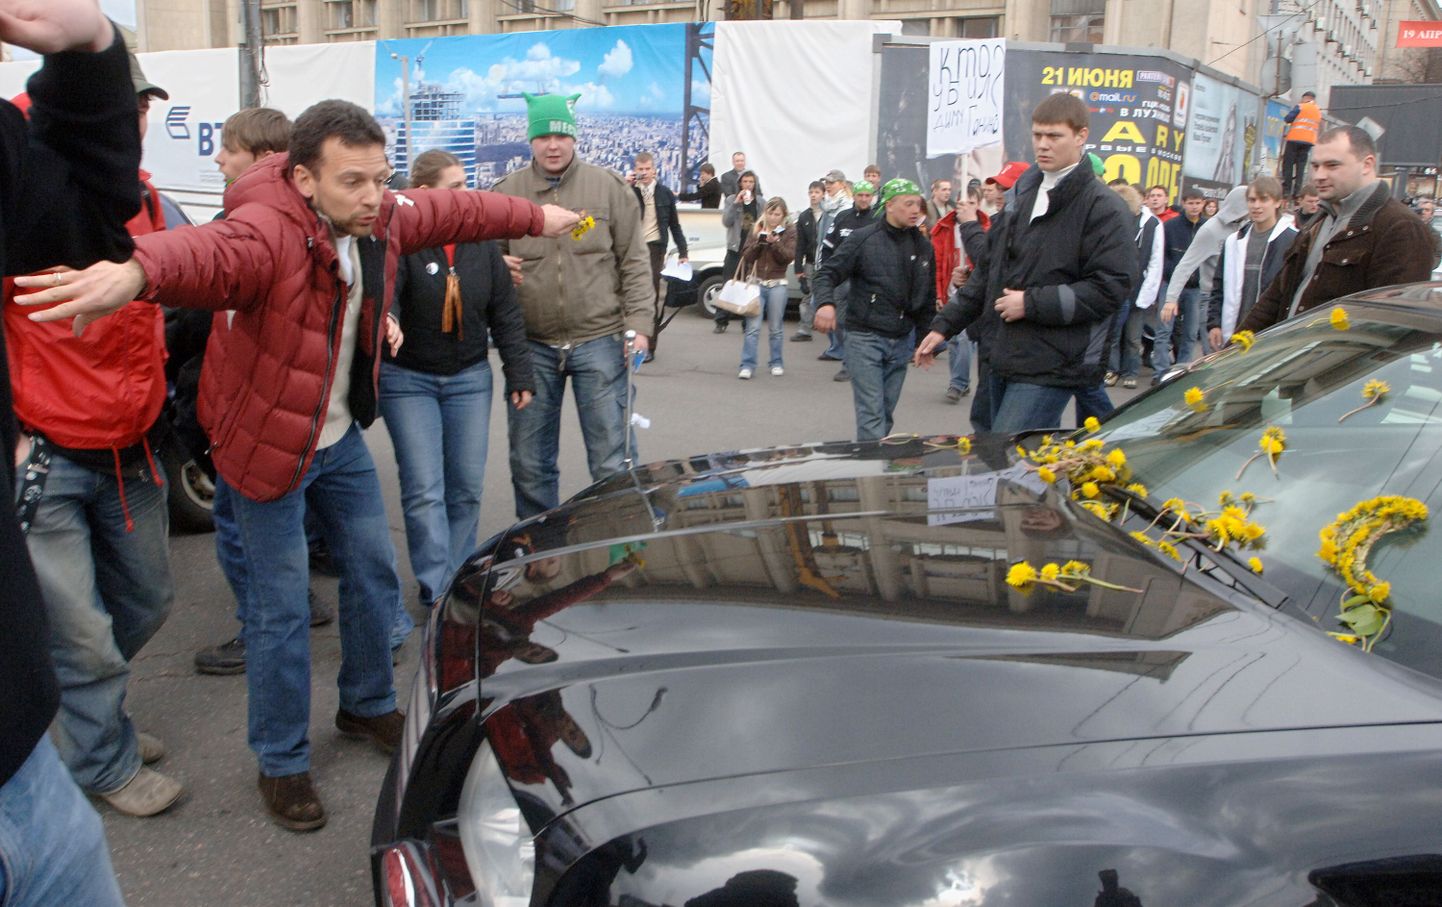 2 мая 2007 года, Москва, улица Мясницкая. Собравший "нашистов" и организовавший блокаду Эстонского посольства Василий Якименко (в красной куртке) будто защищает Марину Кальюранд.